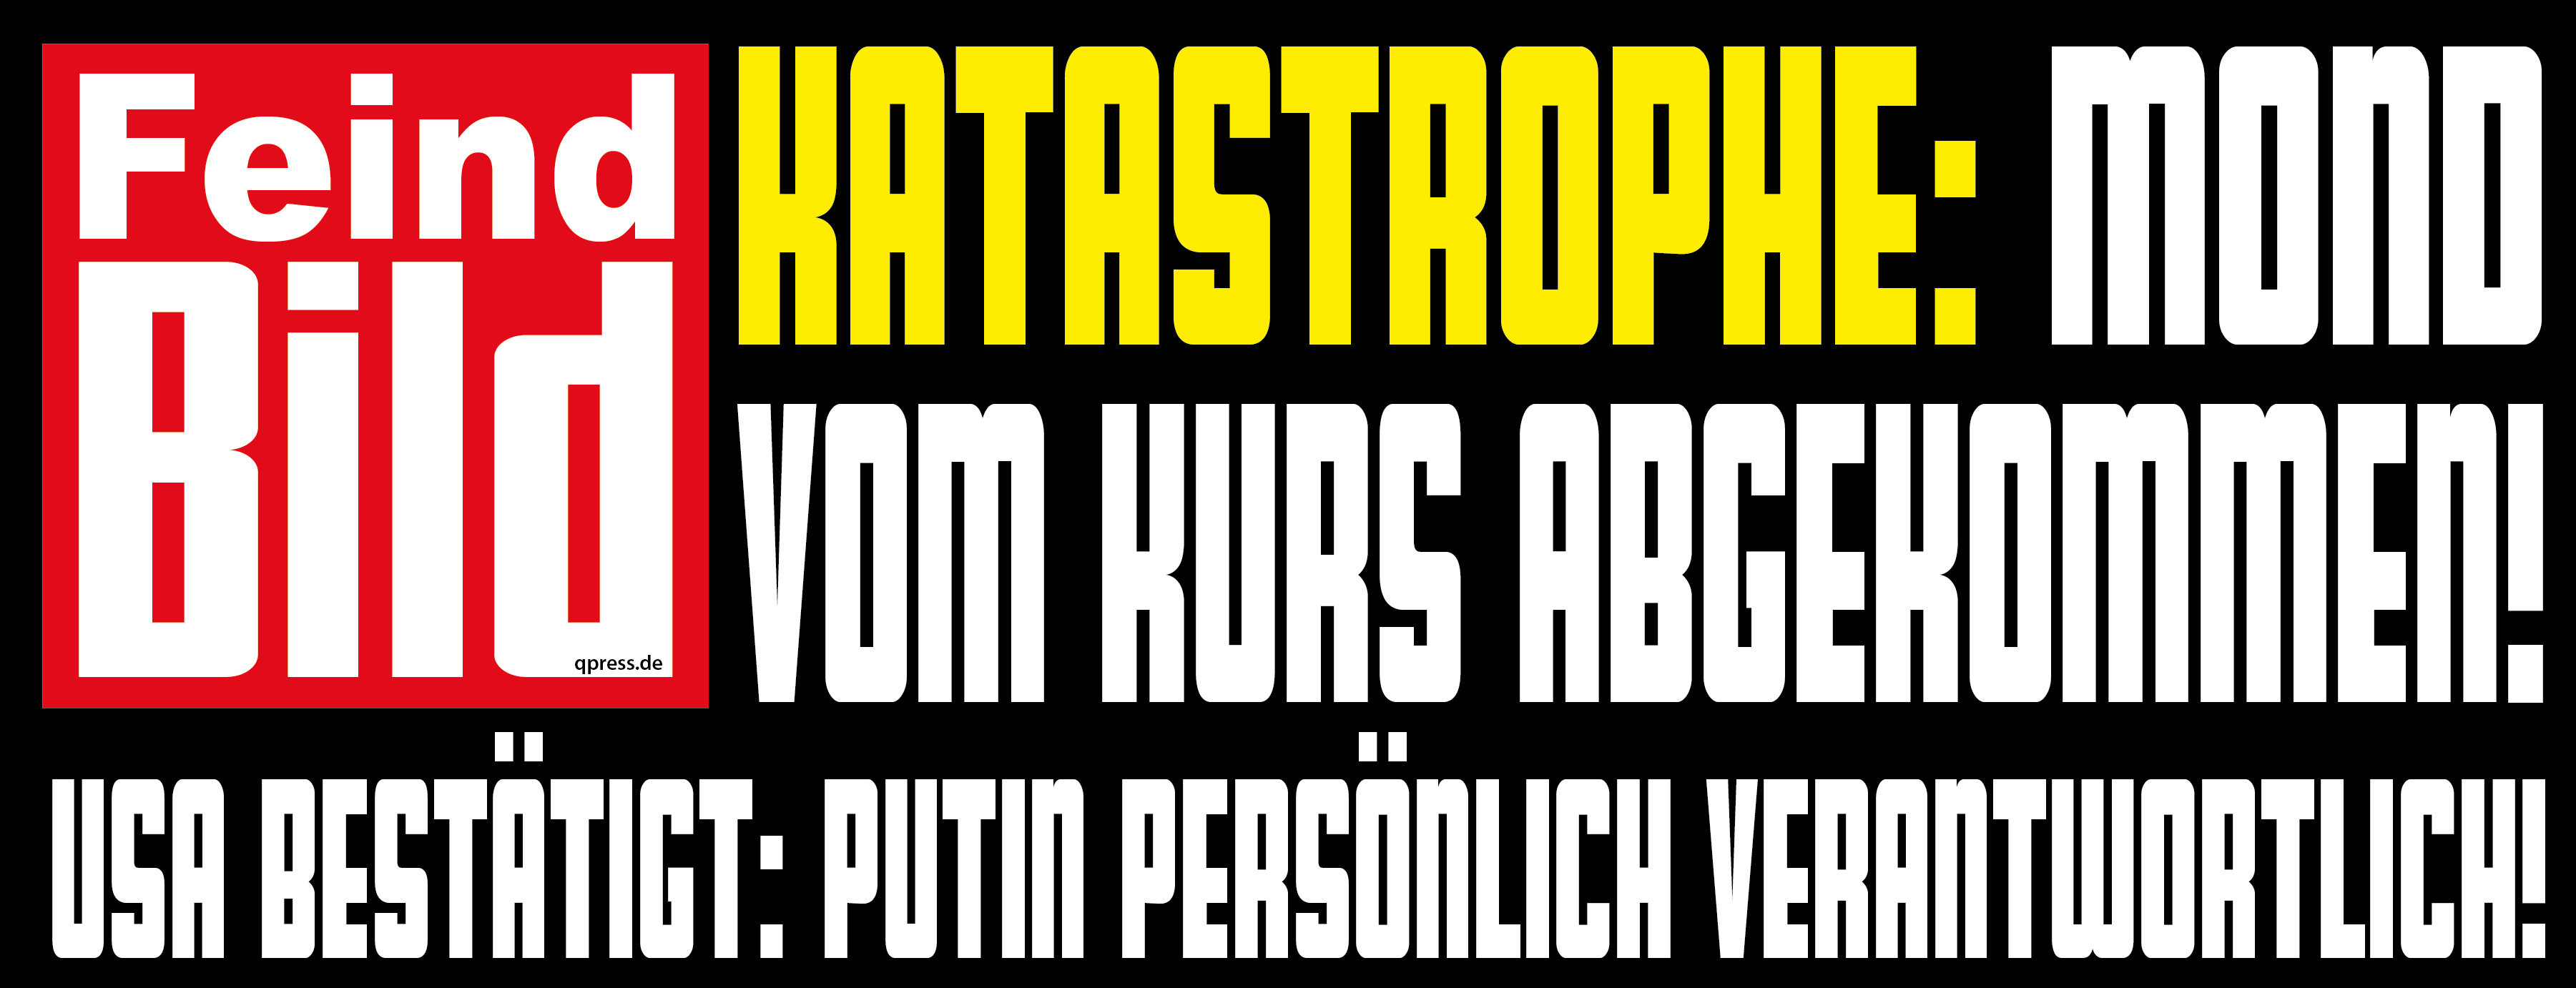 Feind BIld Putin Ukraine ist schuld Propaganda Schlagzeile qpress